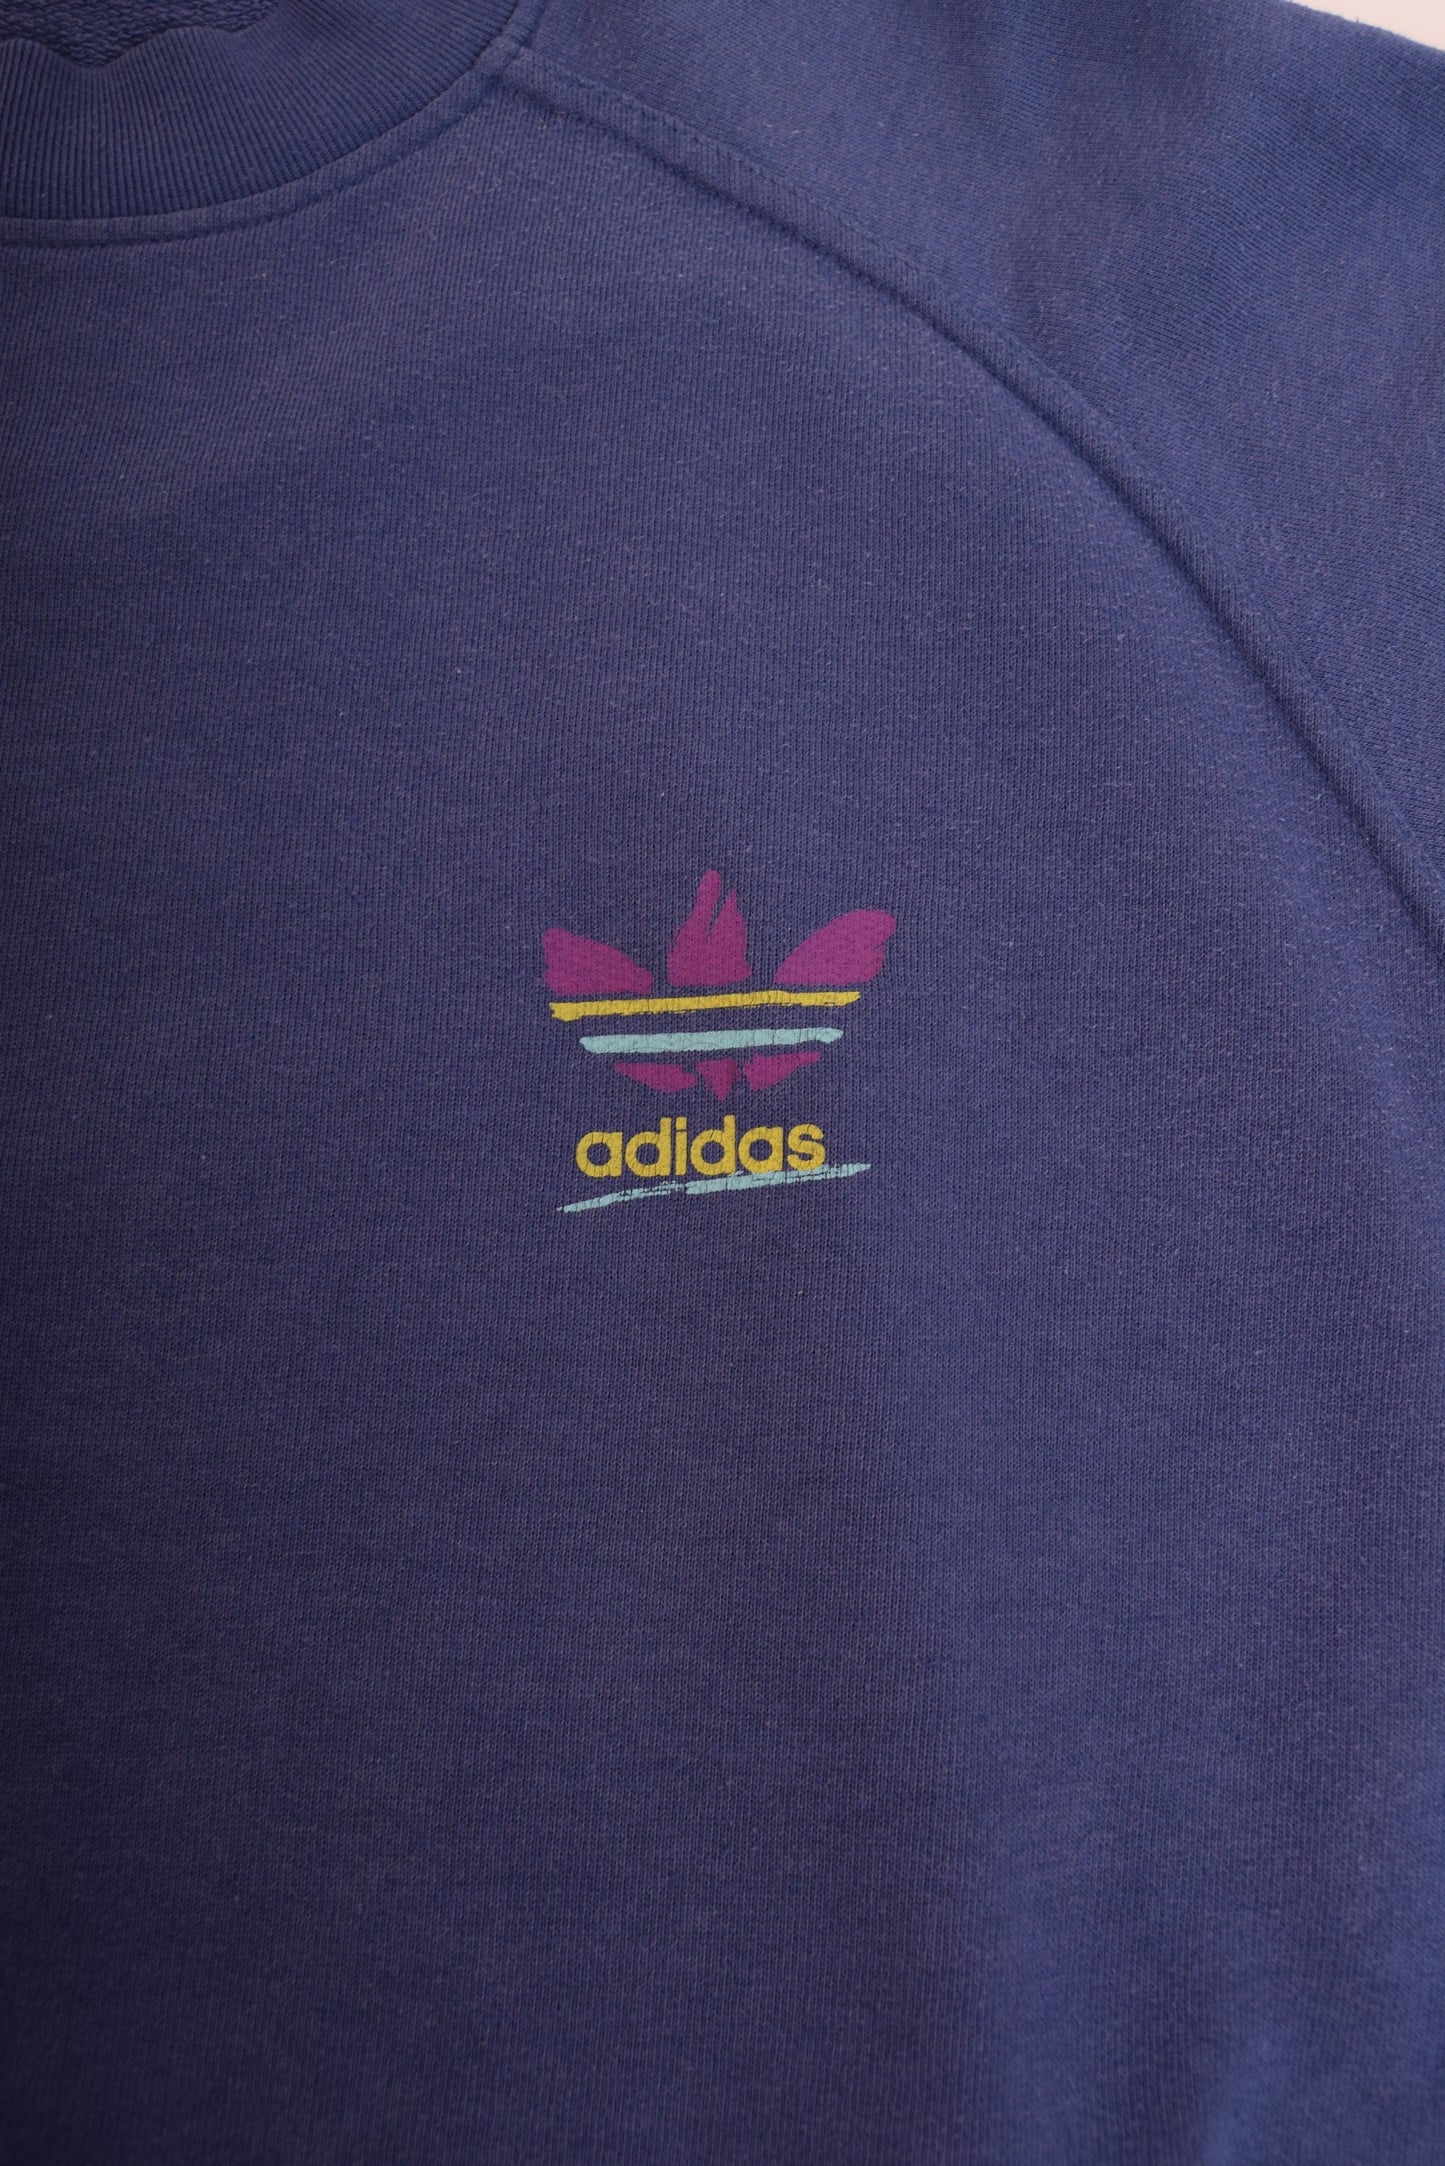 Vintage Adidas Sweatshirt 90's Size M-L Purple